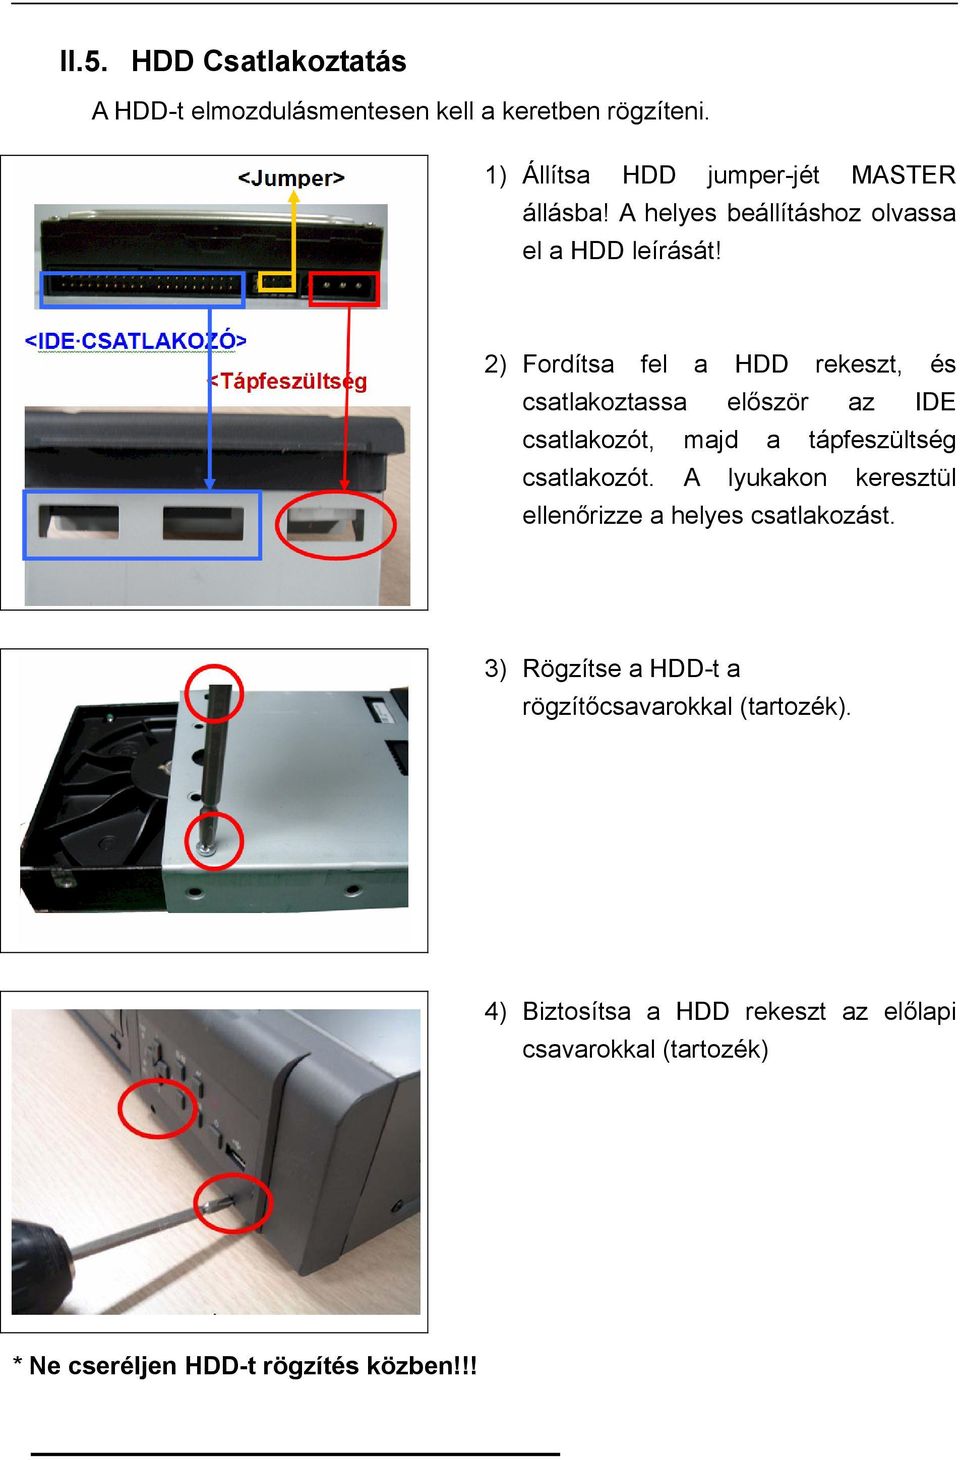 2) Fordítsa fel a HDD rekeszt, és csatlakoztassa először az IDE csatlakozót, majd a tápfeszültség csatlakozót.